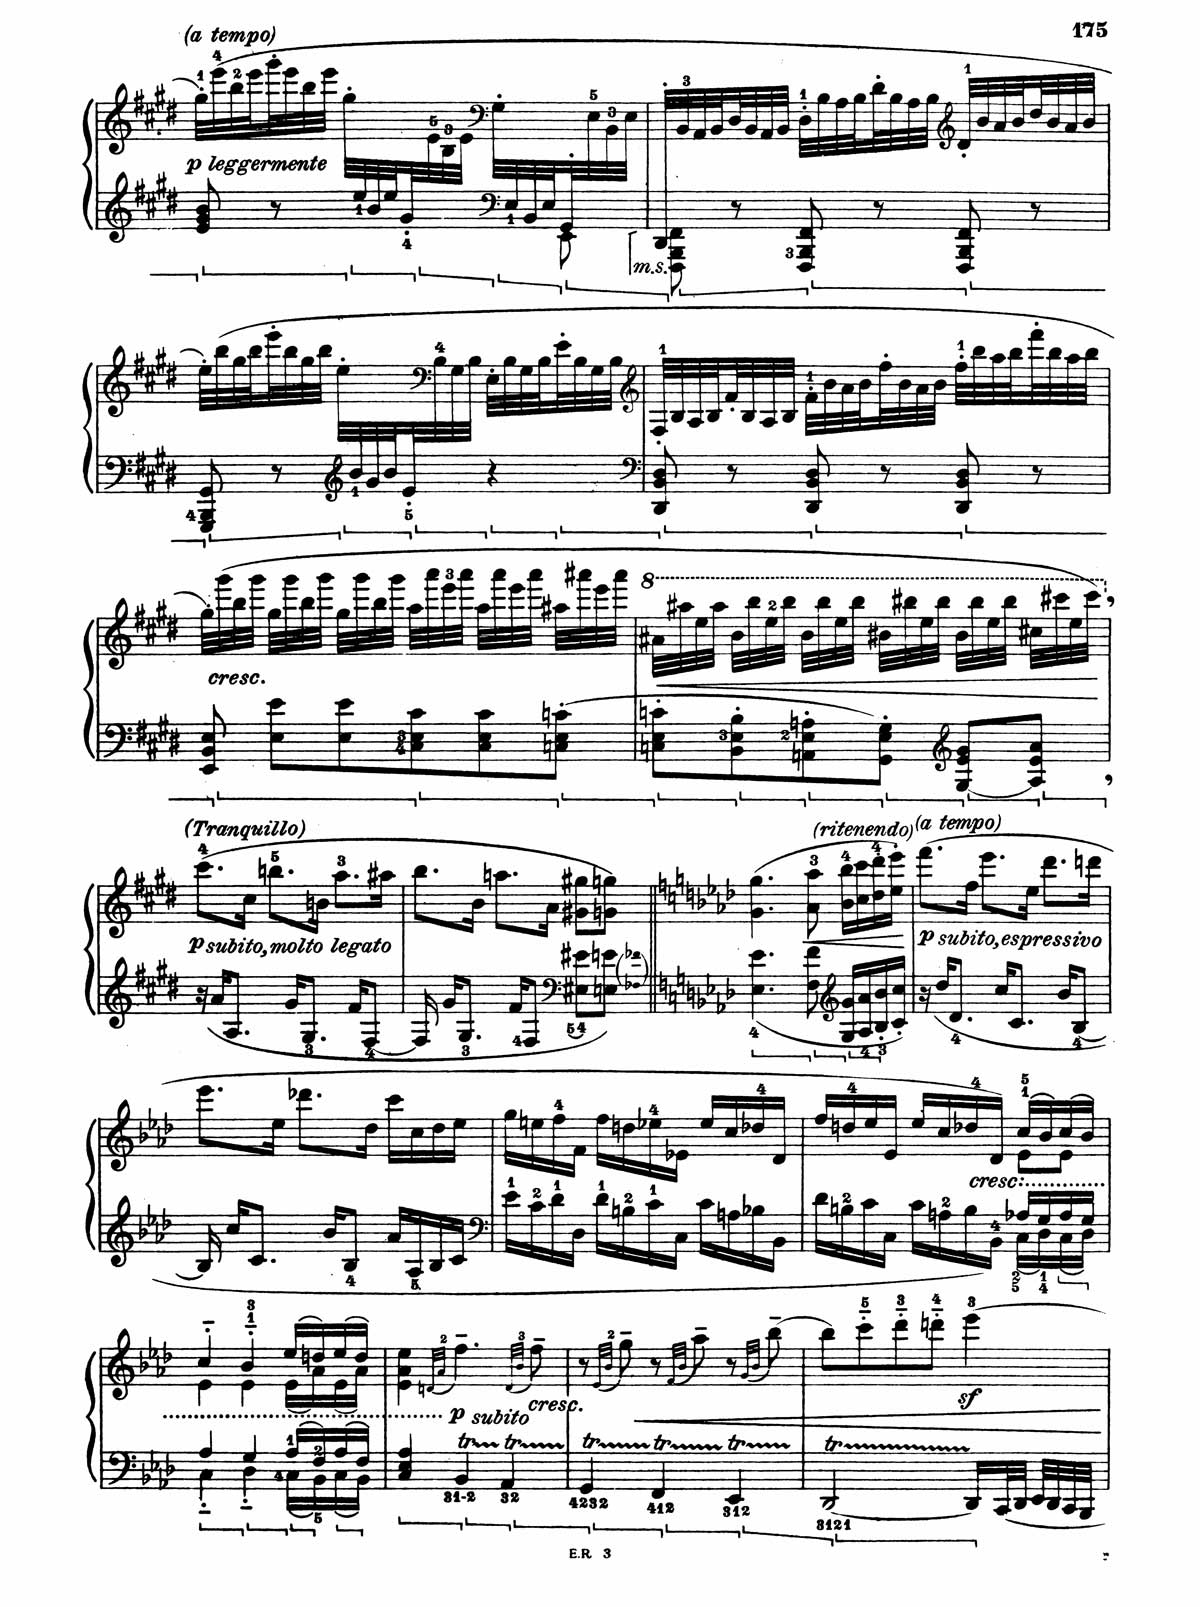 Beethoven Piano Sonata 31-6 sheet music